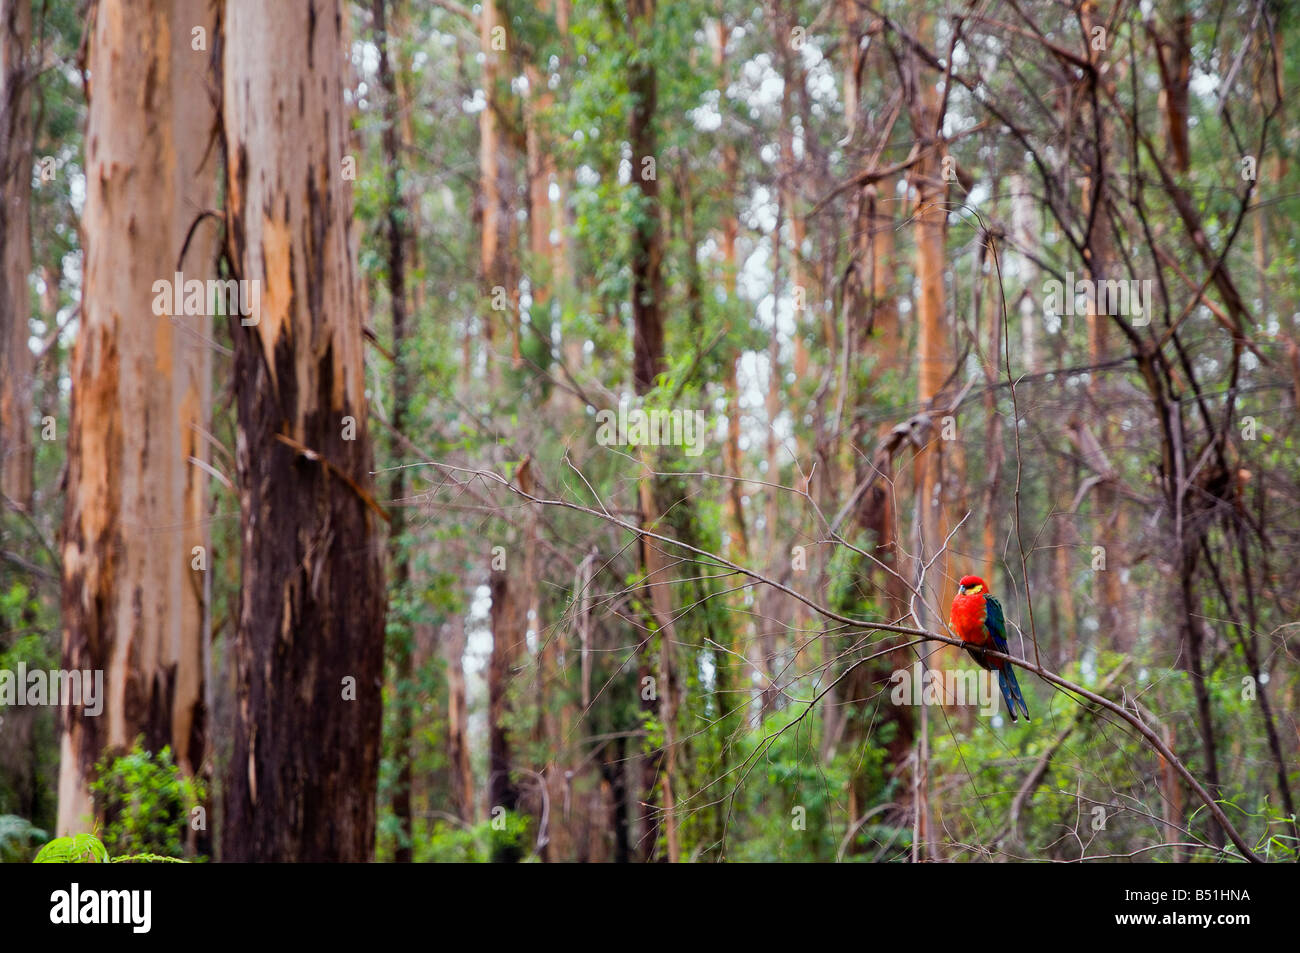 King Parrot, Western Australia, Australia Stock Photo